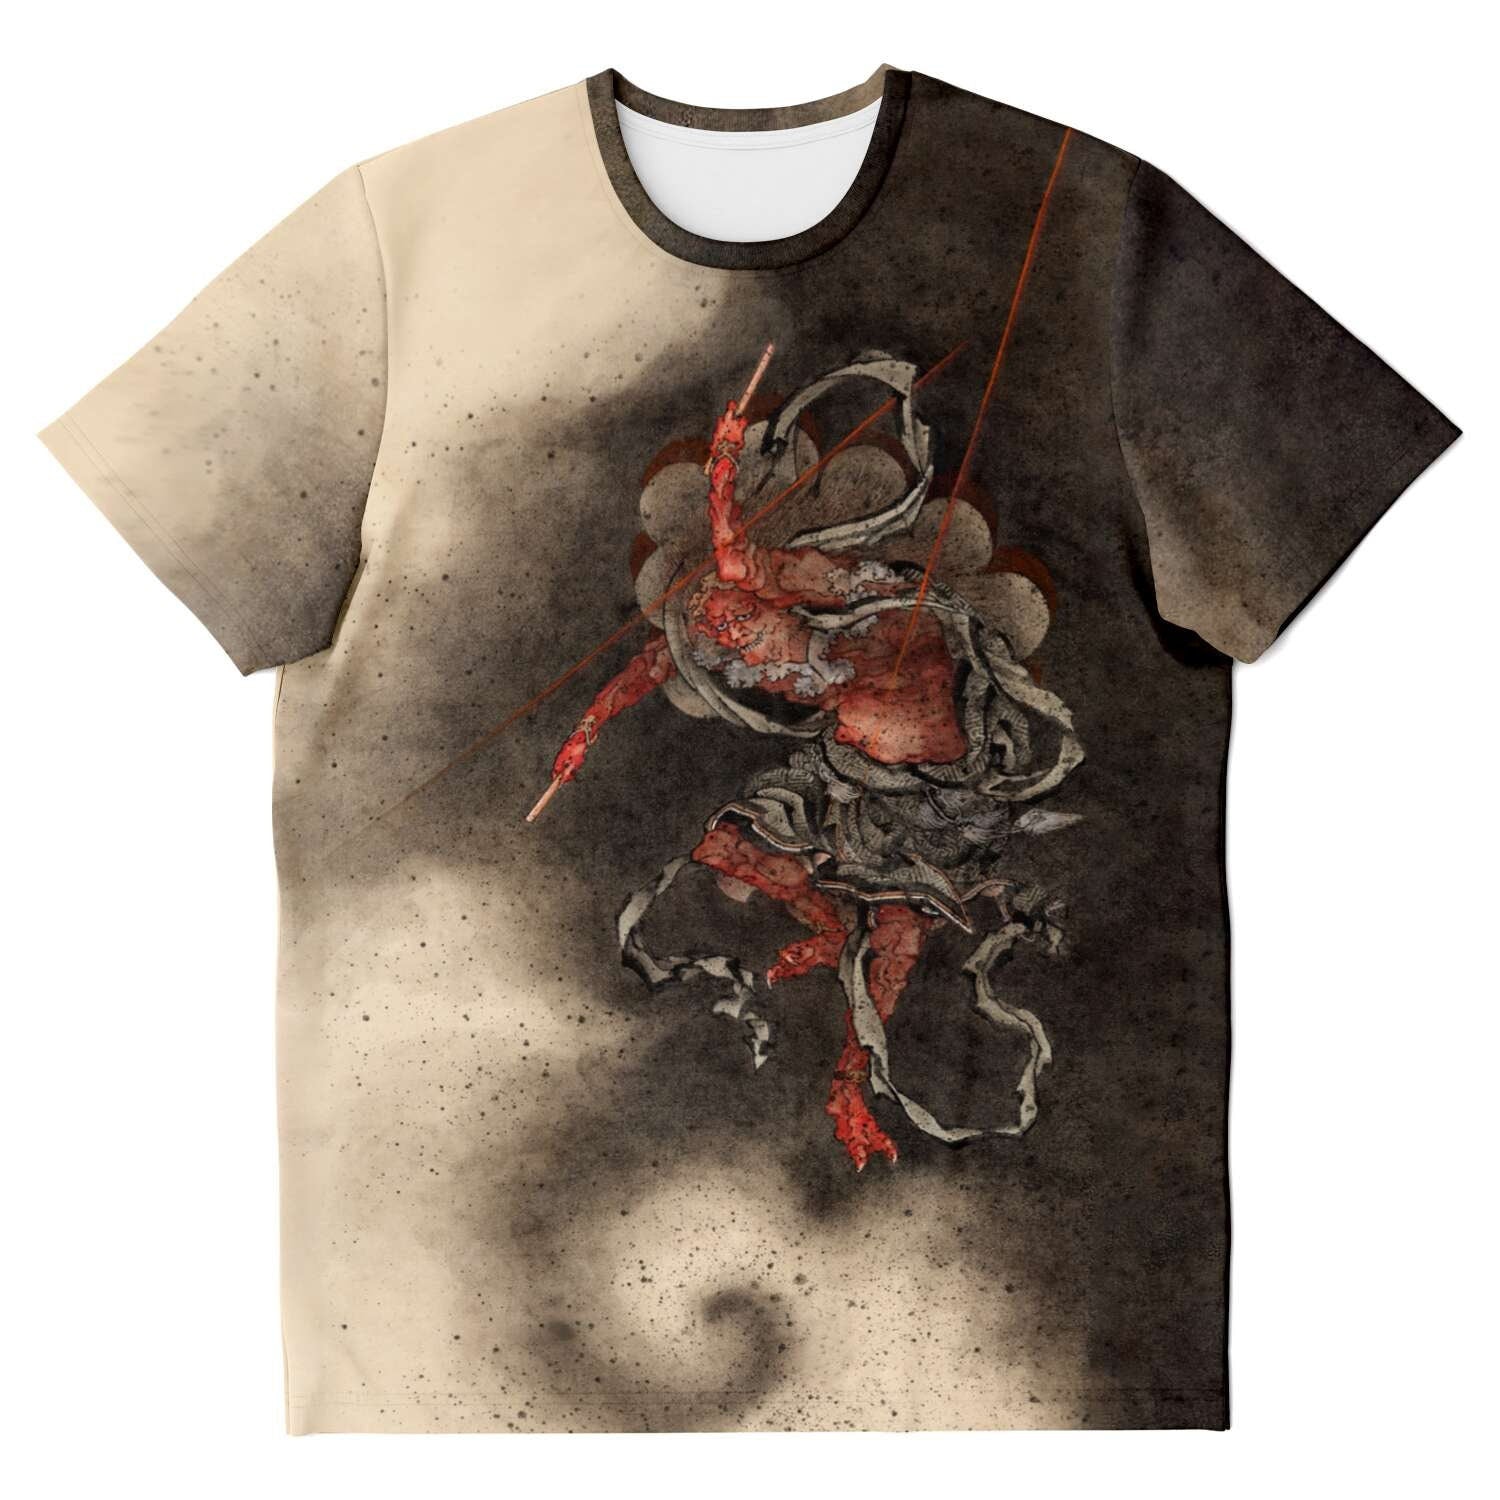 T-shirt Raijin (Raiden) Thunder, Lightning, and Storm God | Shinto Deity | Hokusai Japanese Mythology Graphic T-Shirt Tee